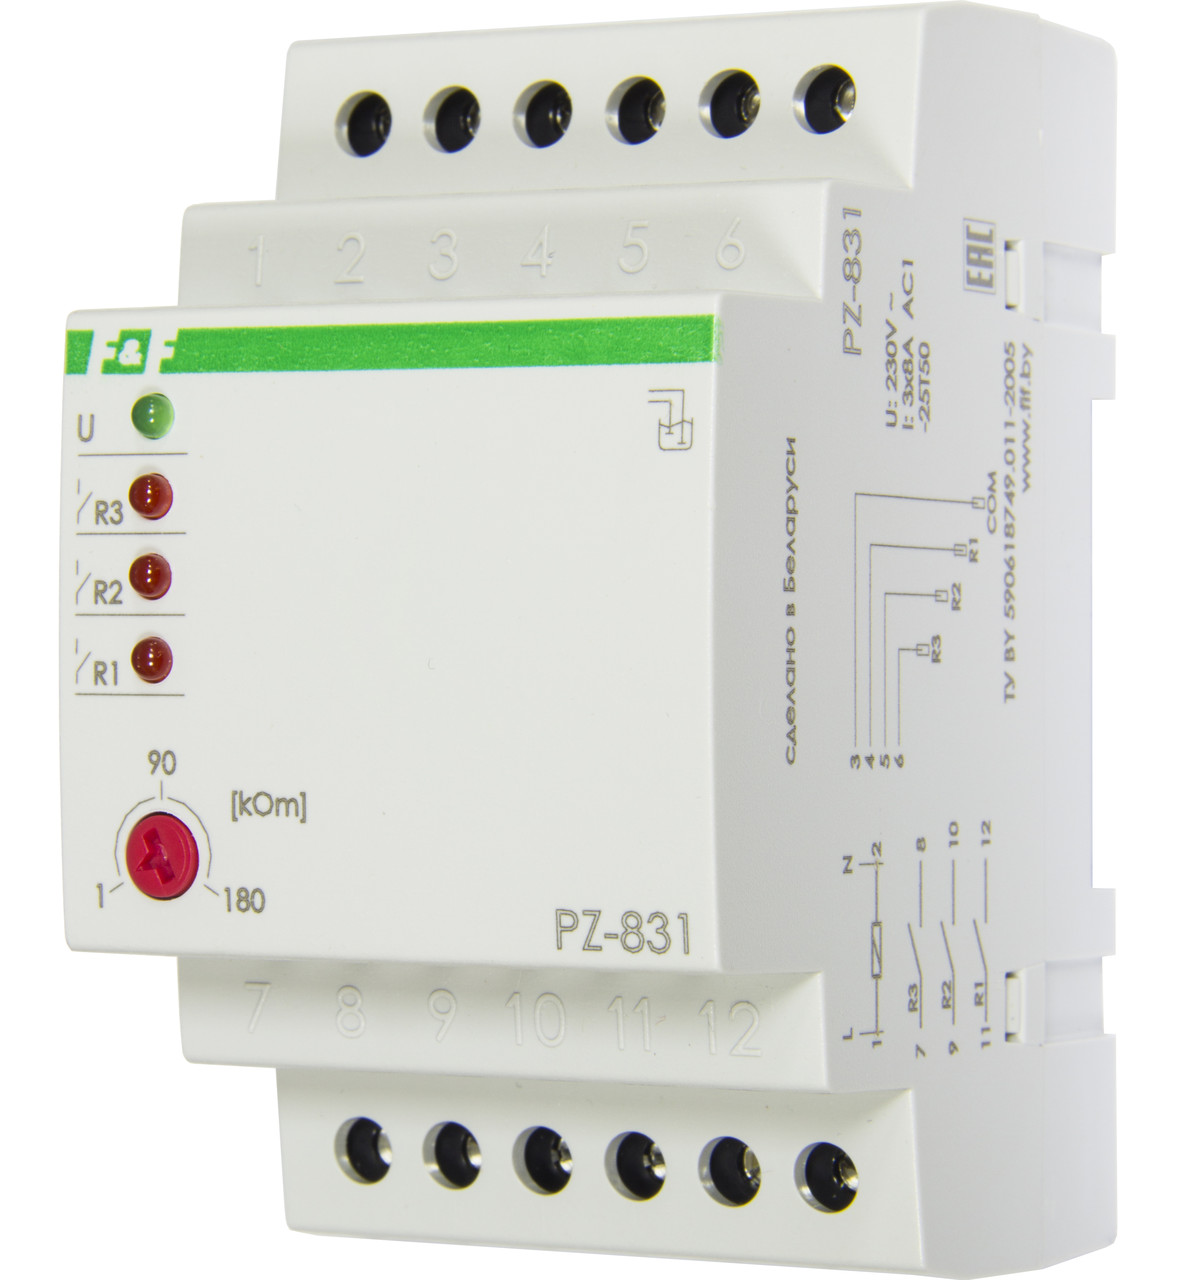 PZ-831 Реле контроля уровня, Три контролируемых уровня, Контакт 3Z, 8 А. Может применяться для контроля жидкос